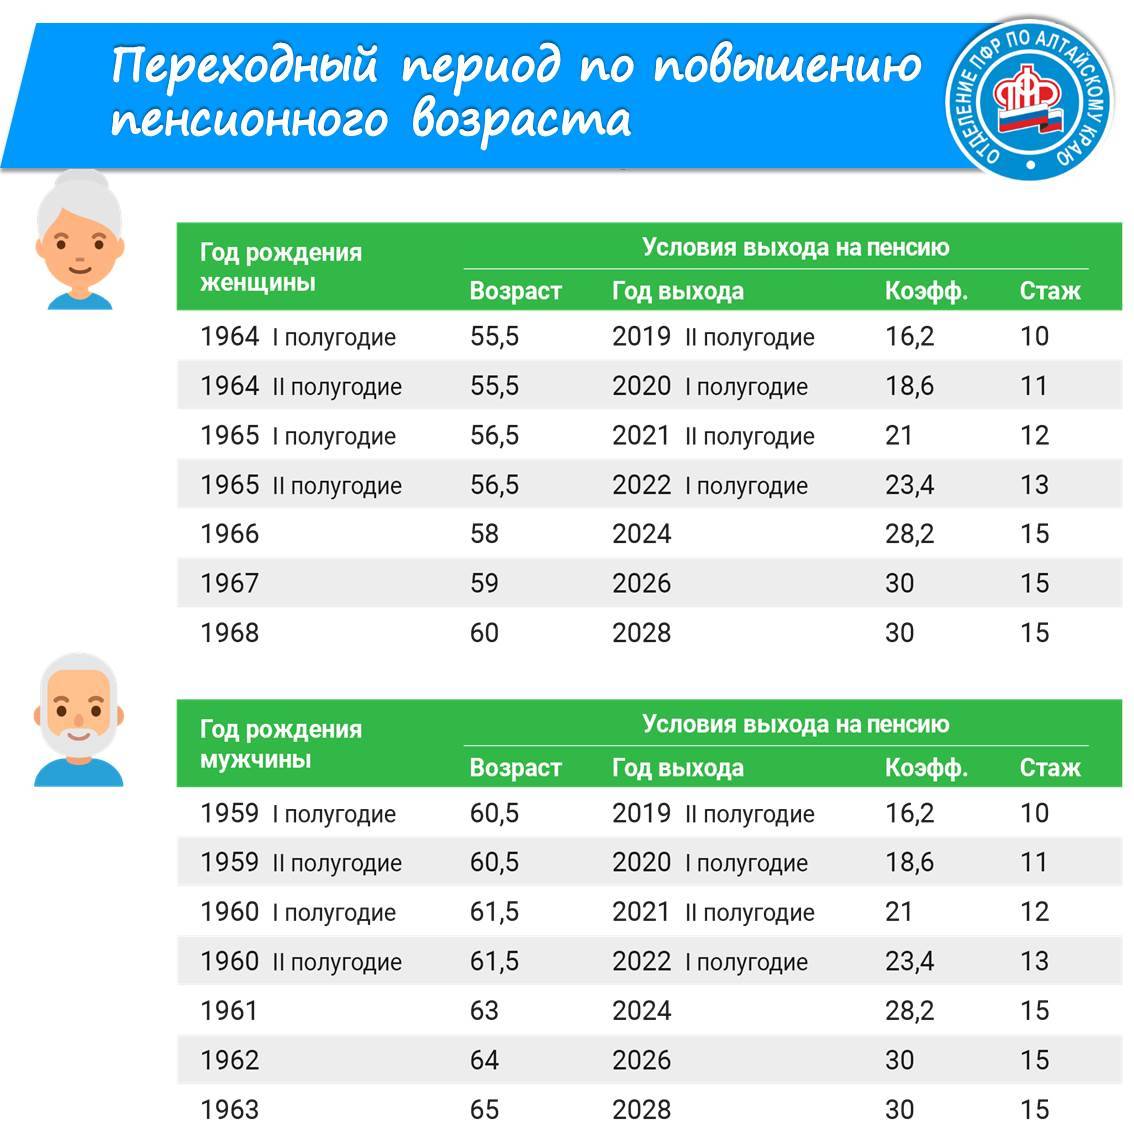 Пенсия в болгария: средняя и минимальная, размеры, особенности, переезд для пенсионеров из россии